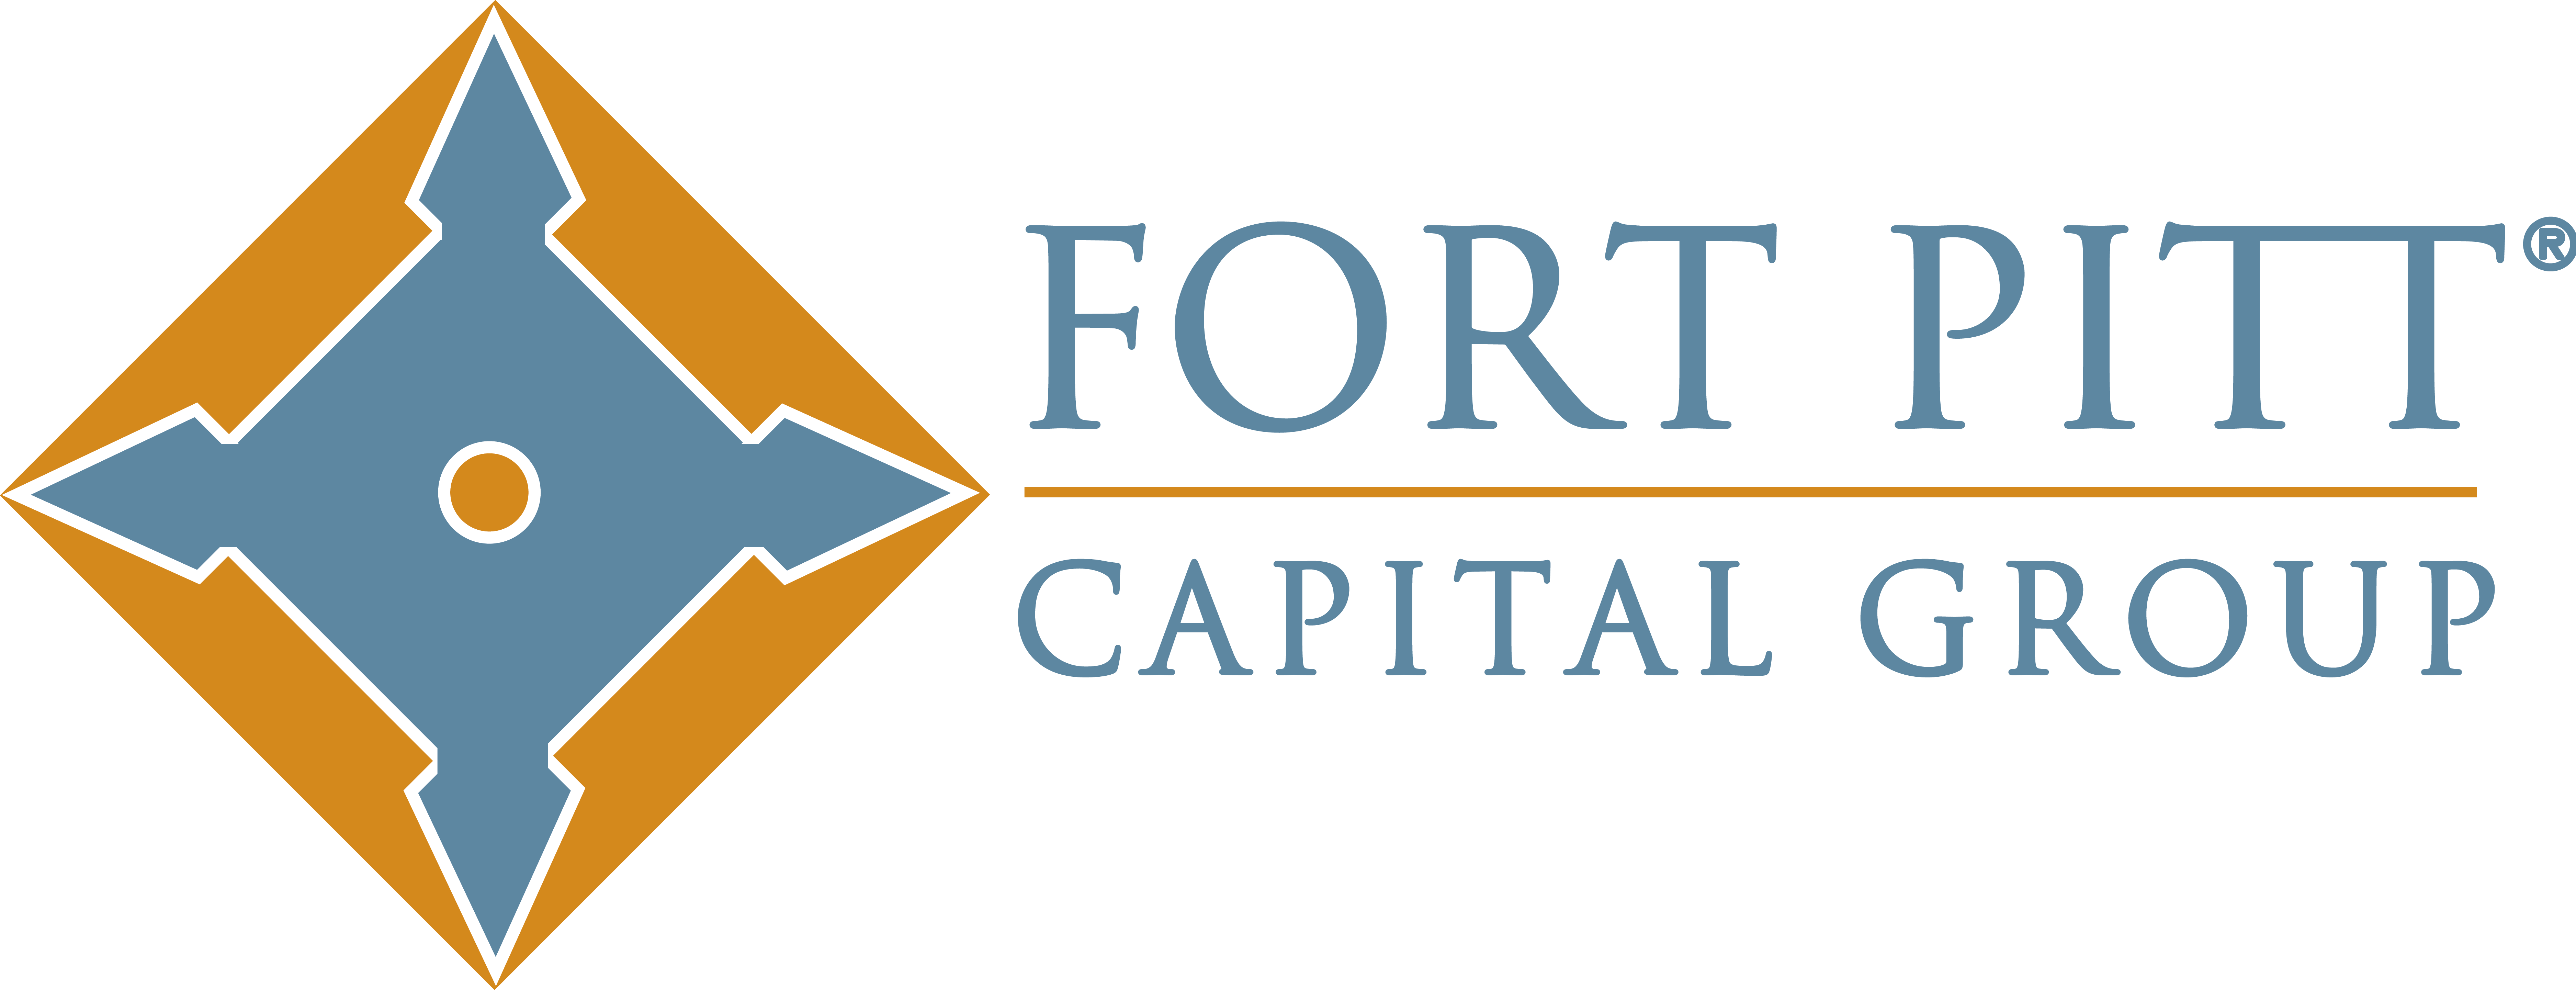 Fort Pitt Capital Group logo